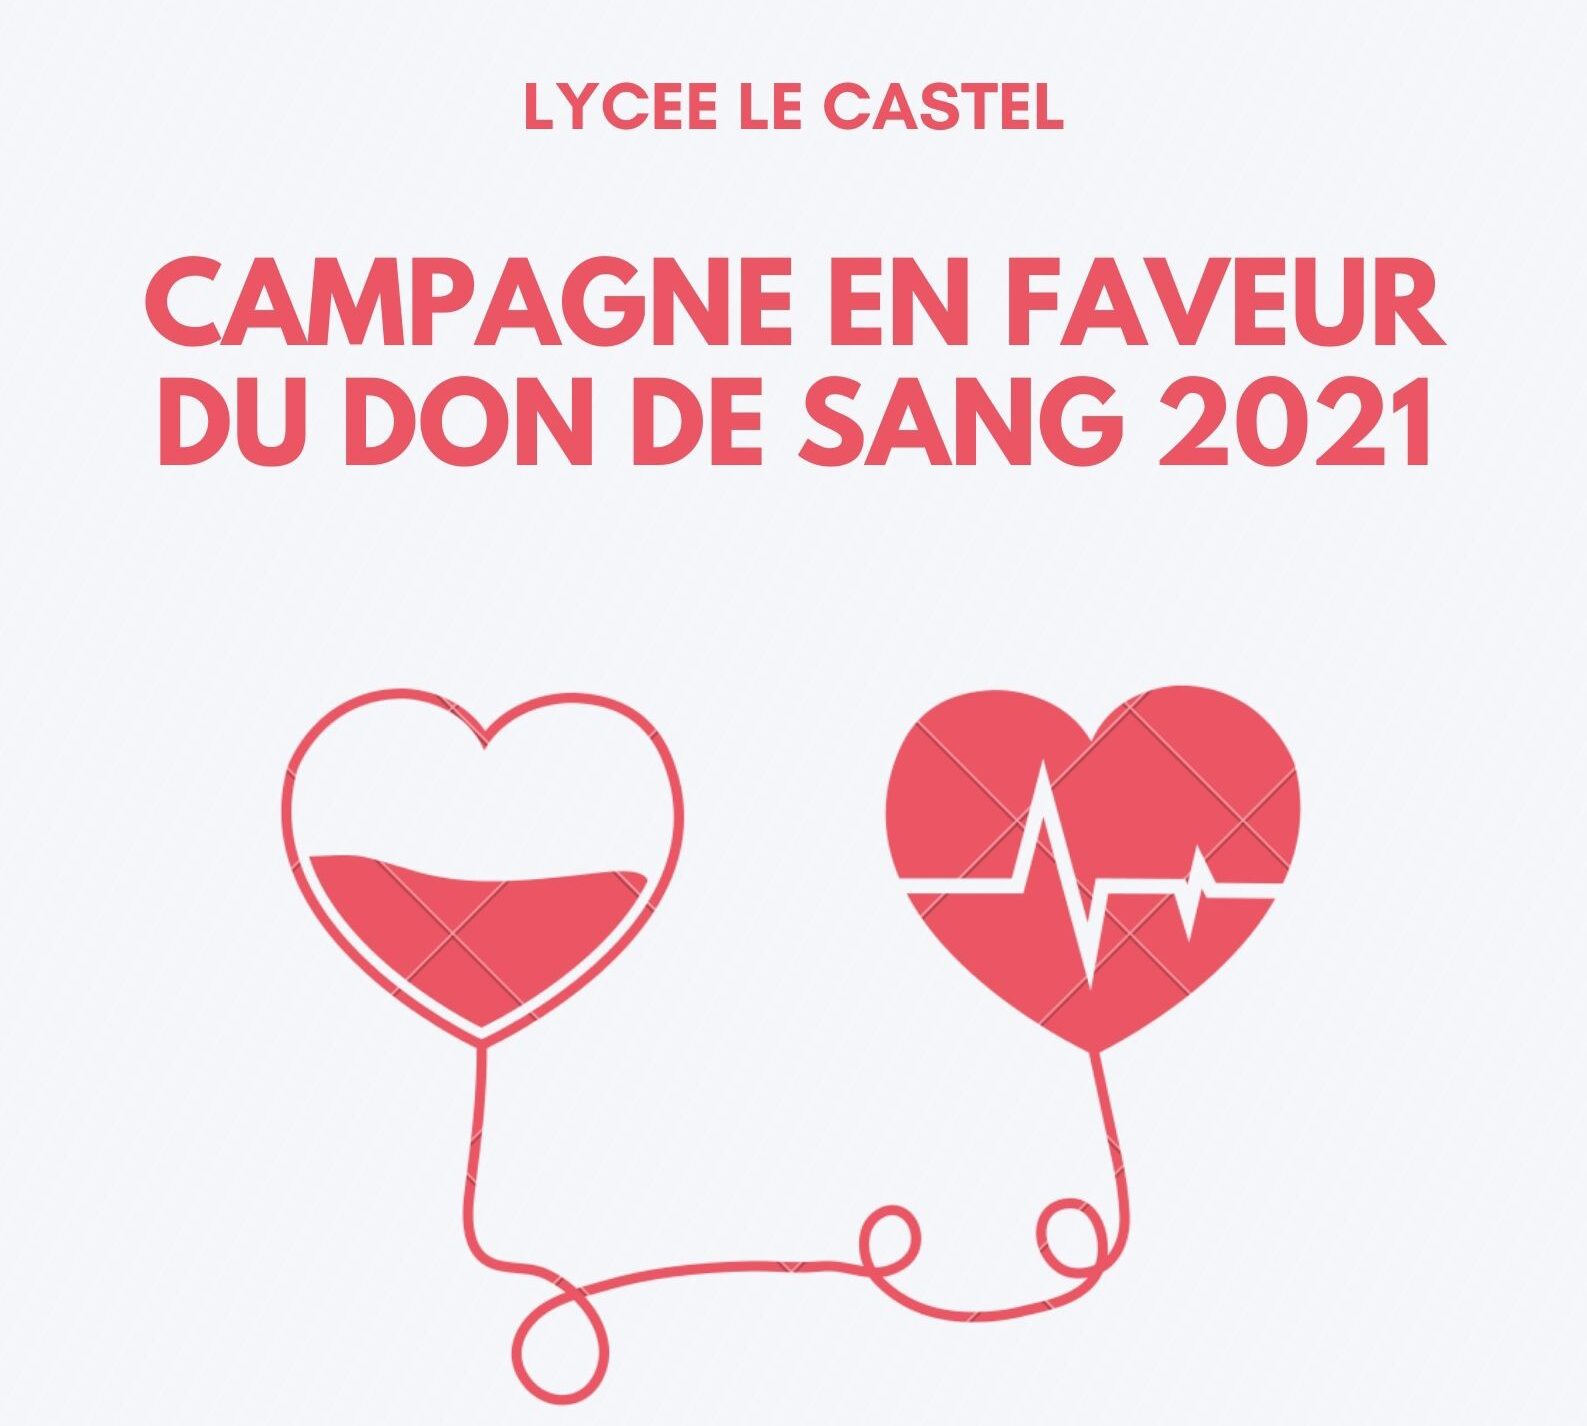 Campagne en faveur du don de sang 2021.jpg